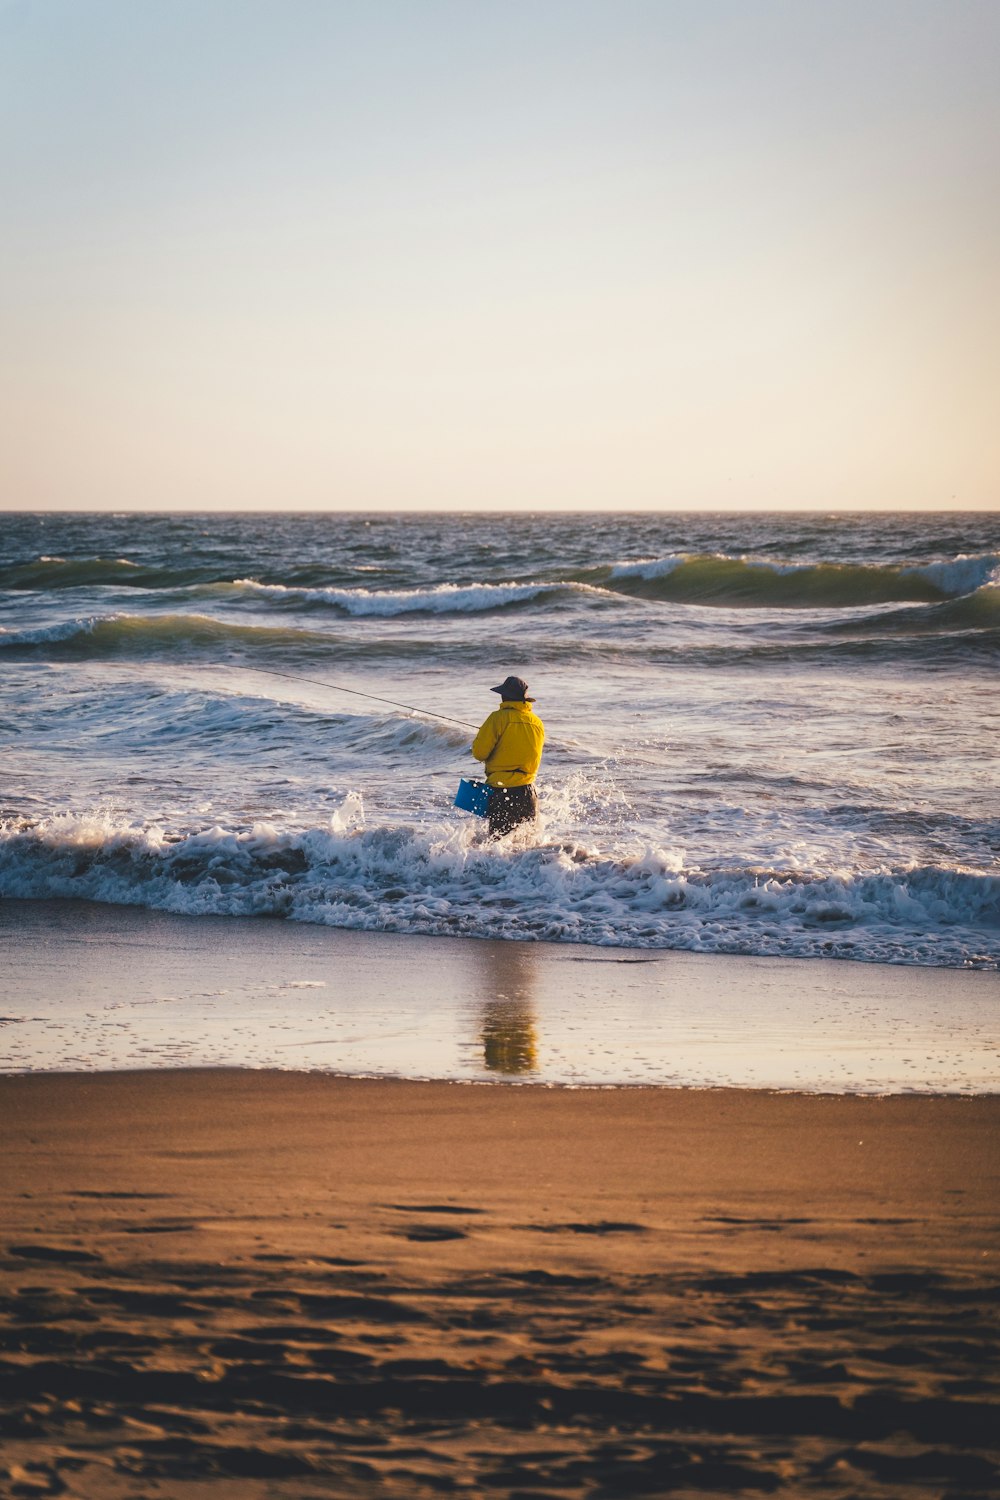 Un uomo che trasporta una tavola da surf su una spiaggia